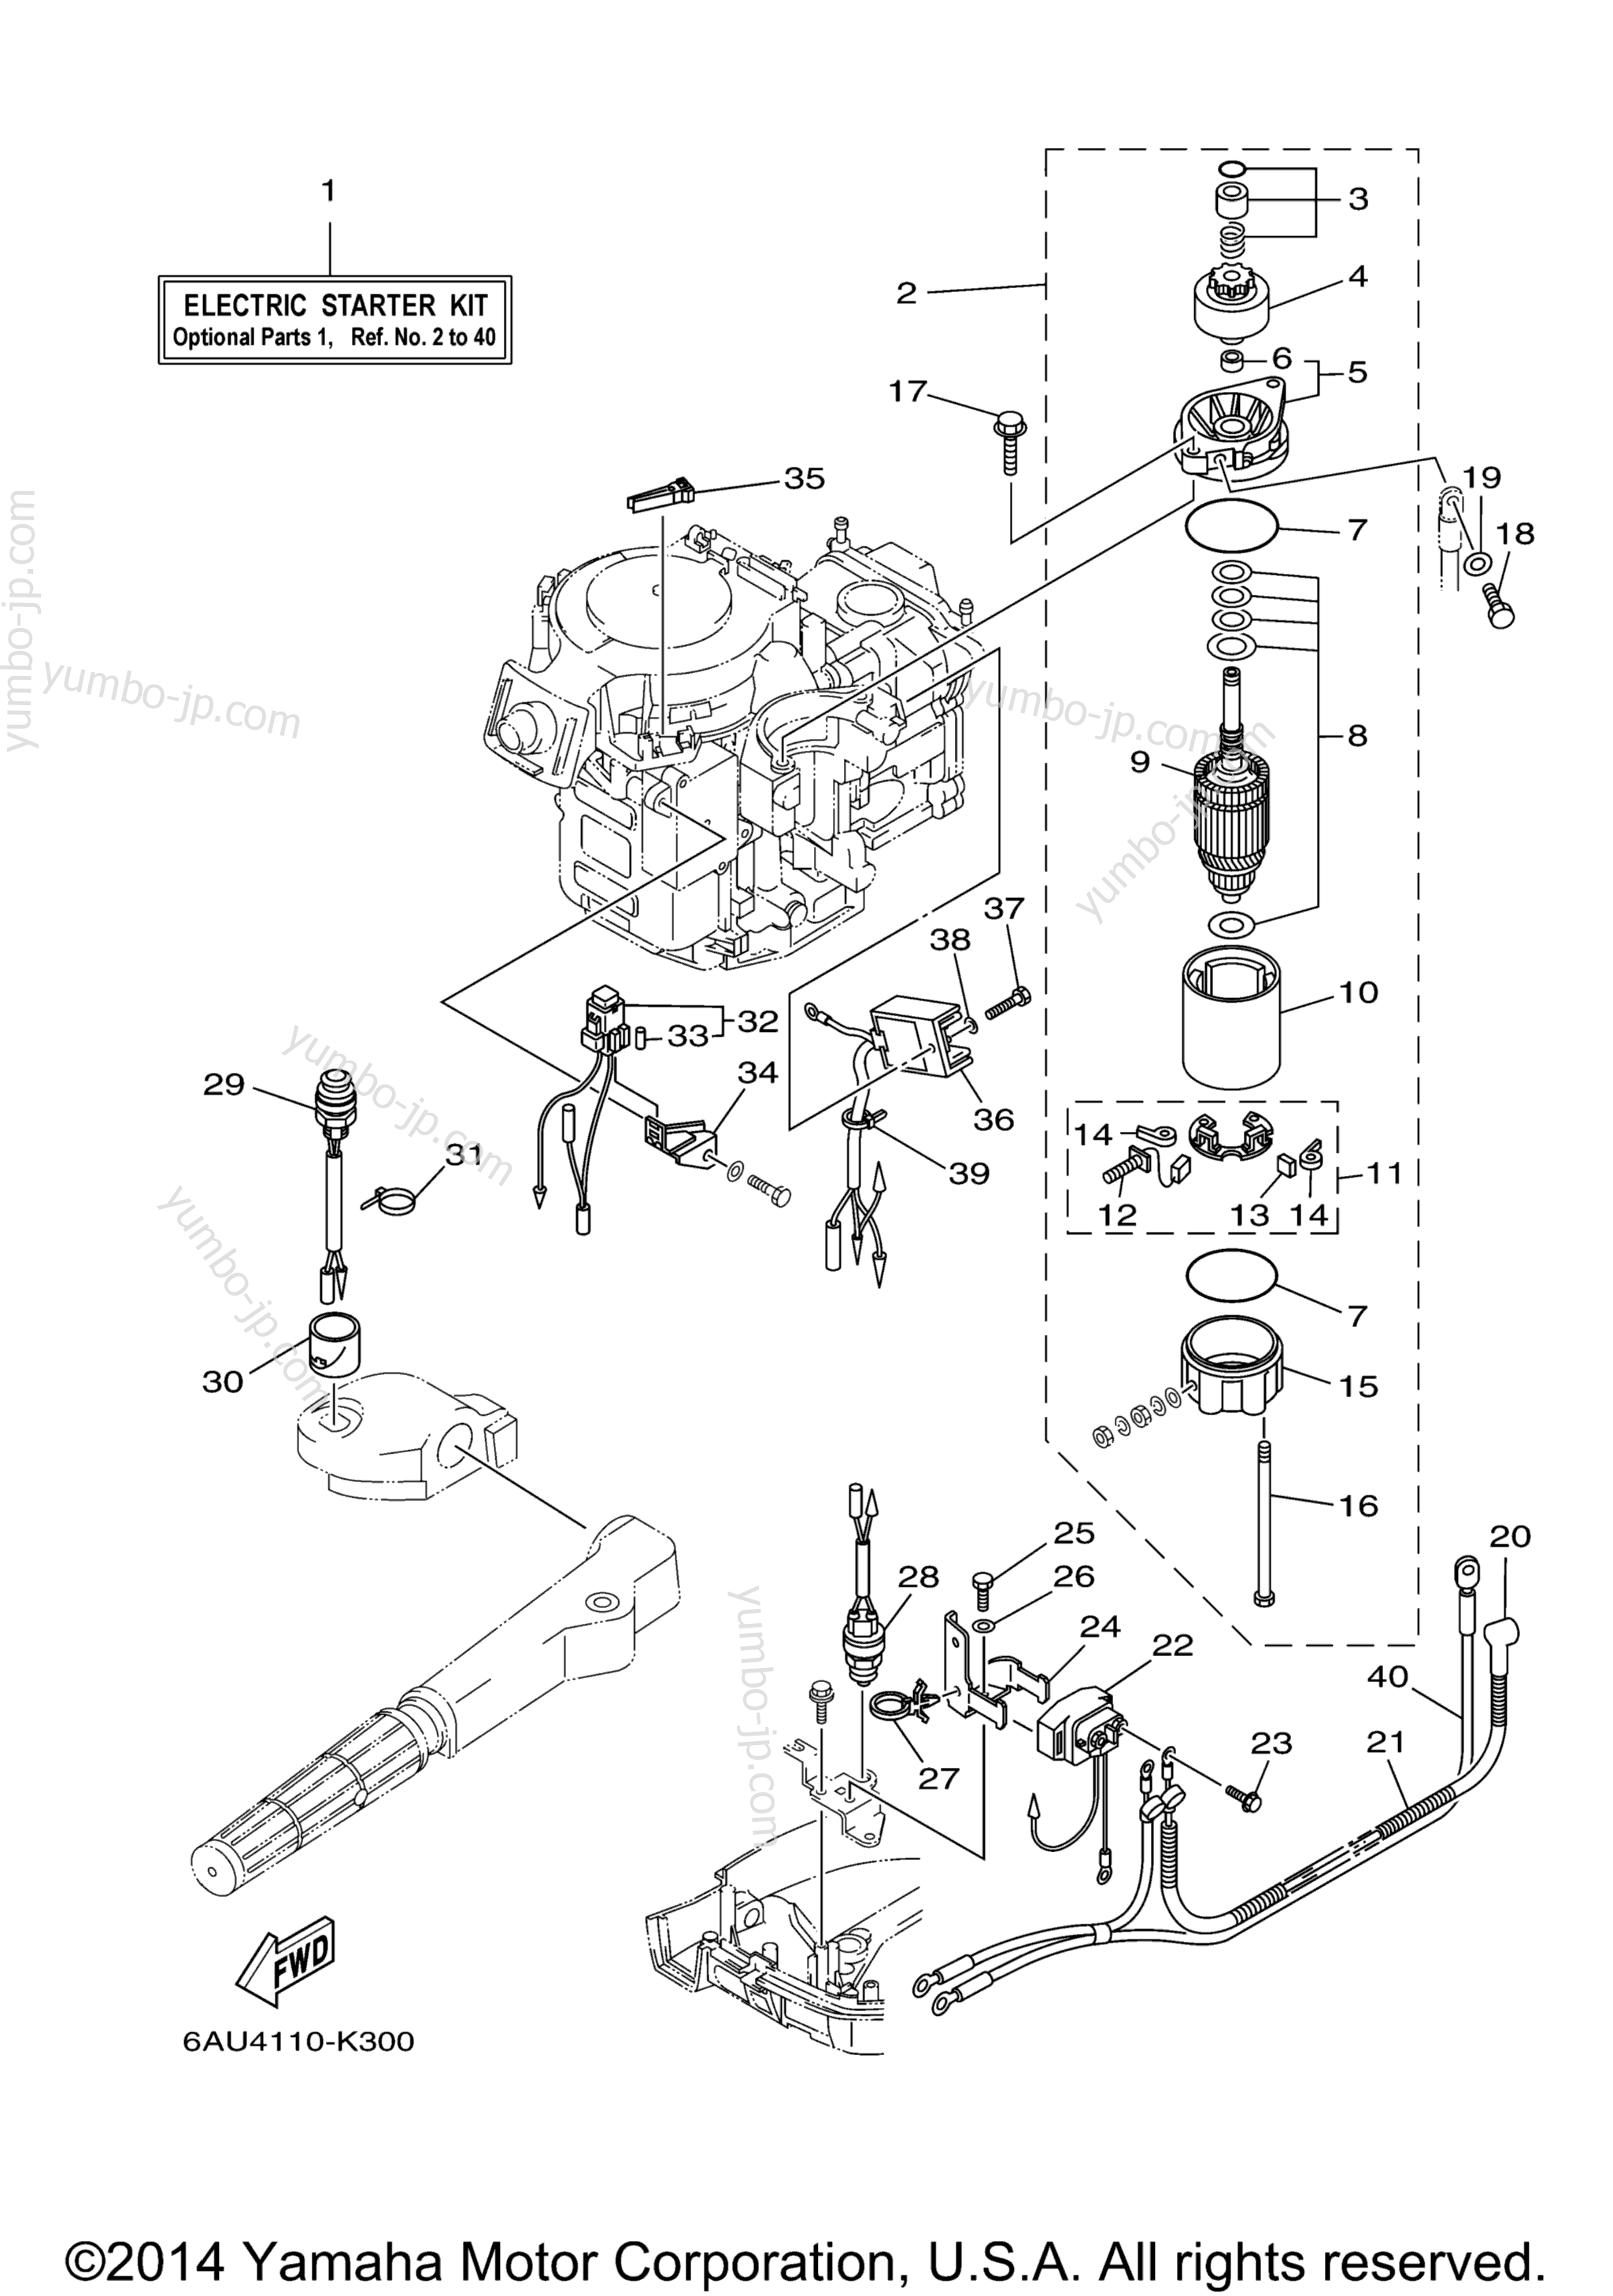 Optional Parts 1 для лодочных моторов YAMAHA F9.9LEA_01 (0112) 2006 г.